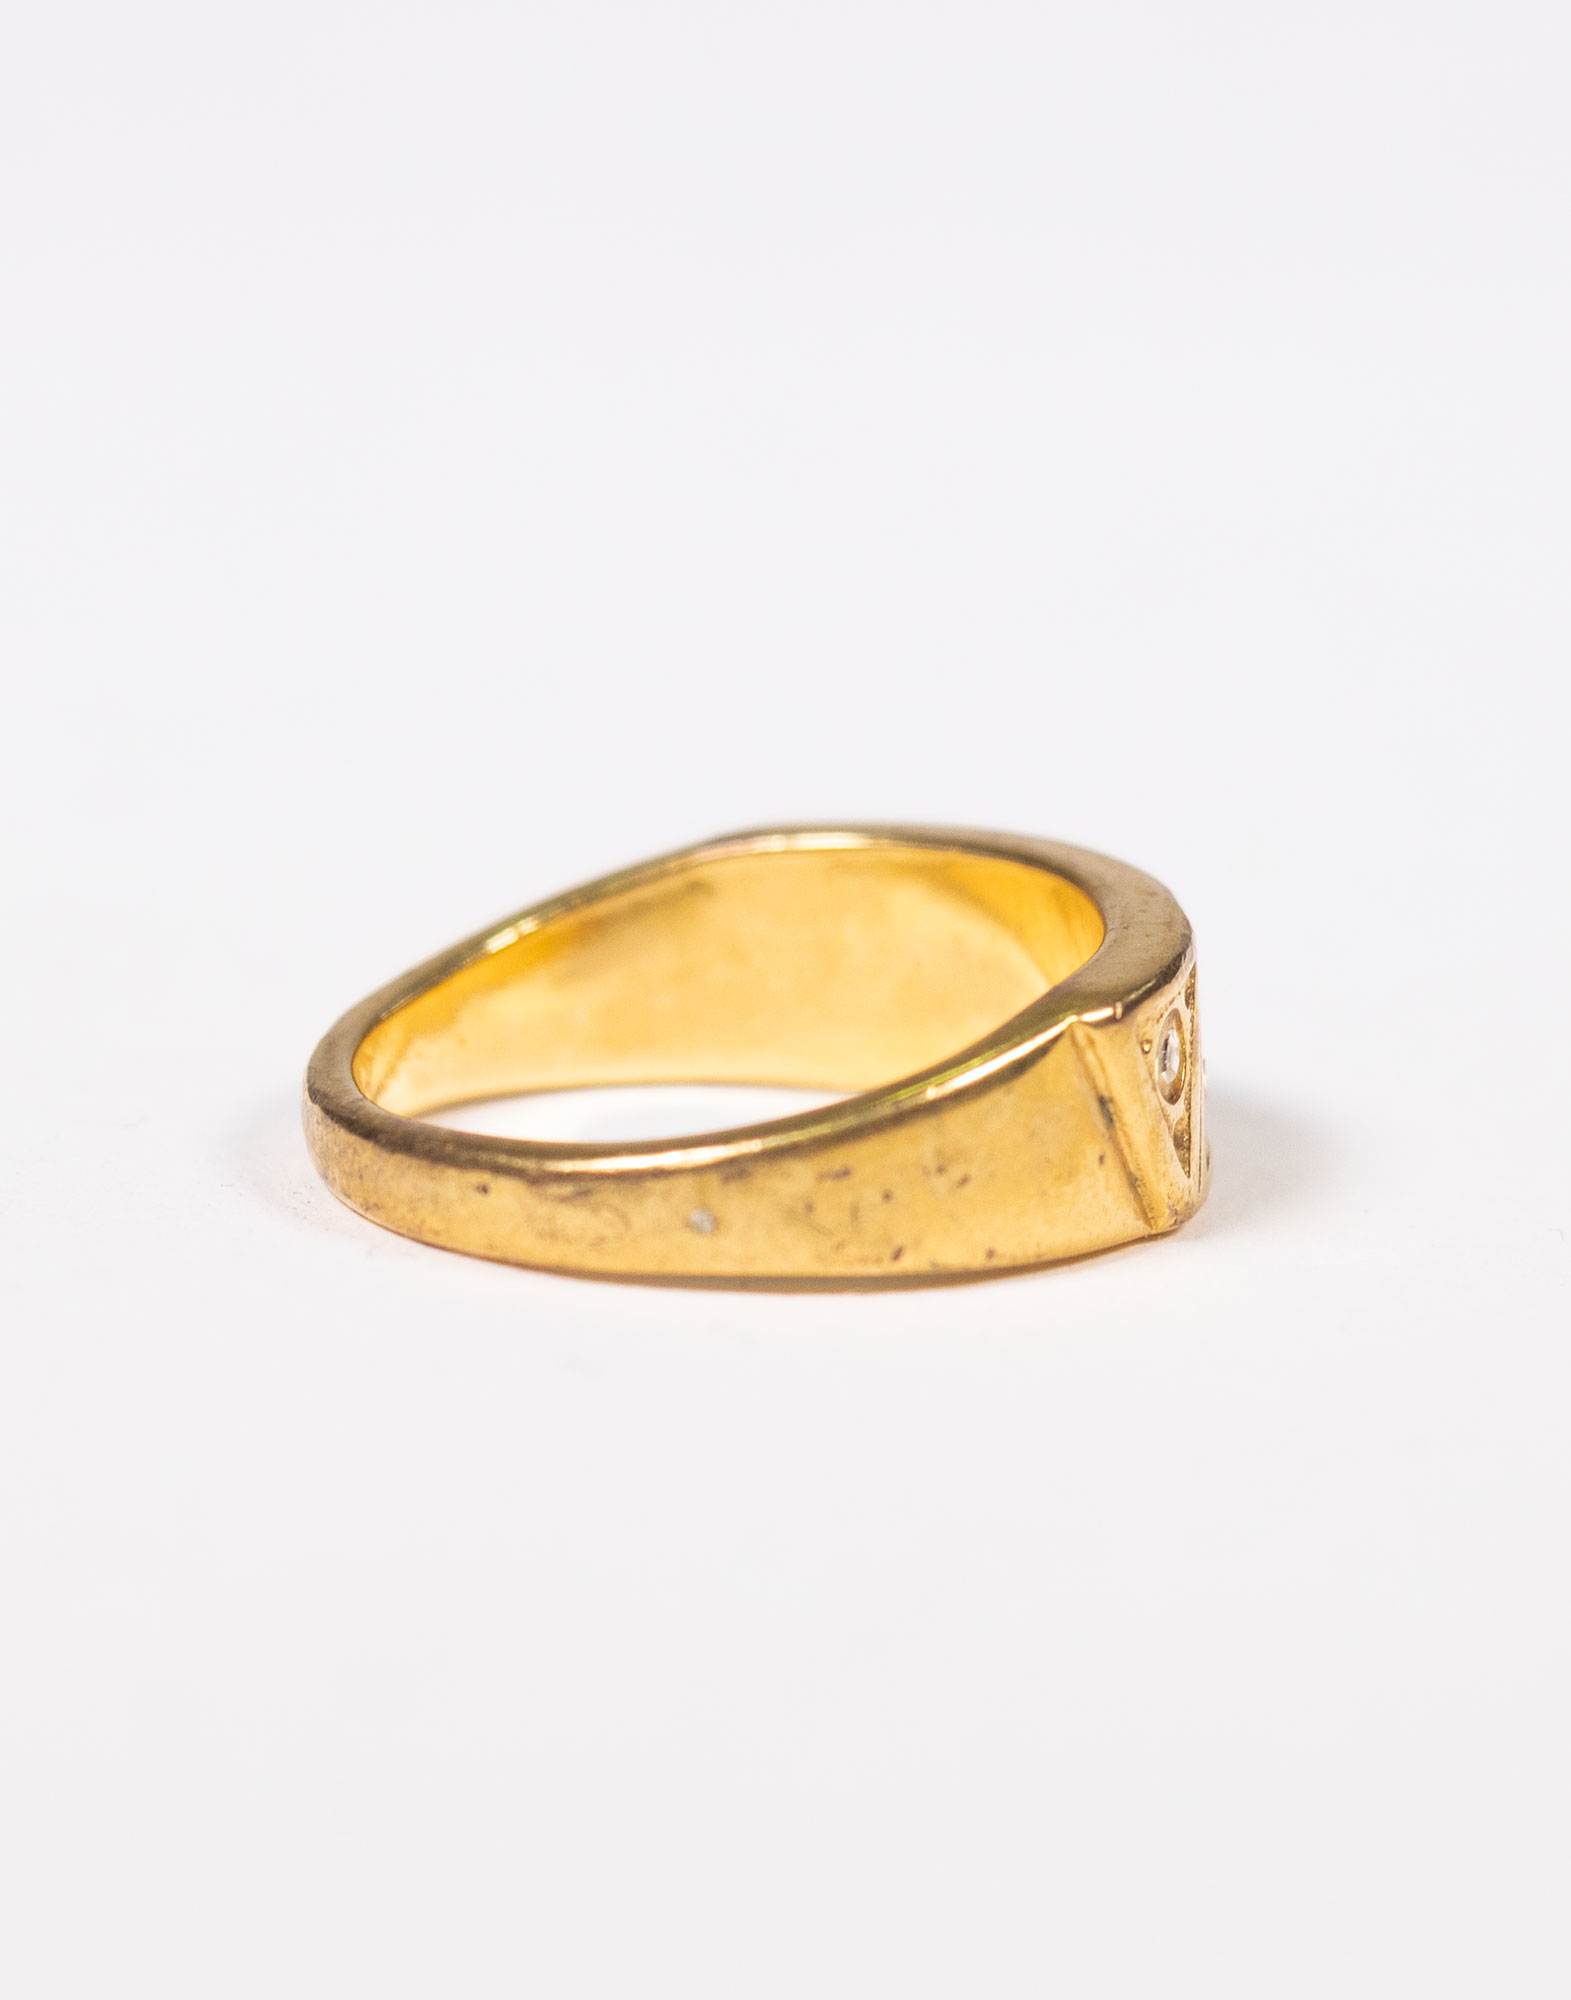 Vintage - Gold ring